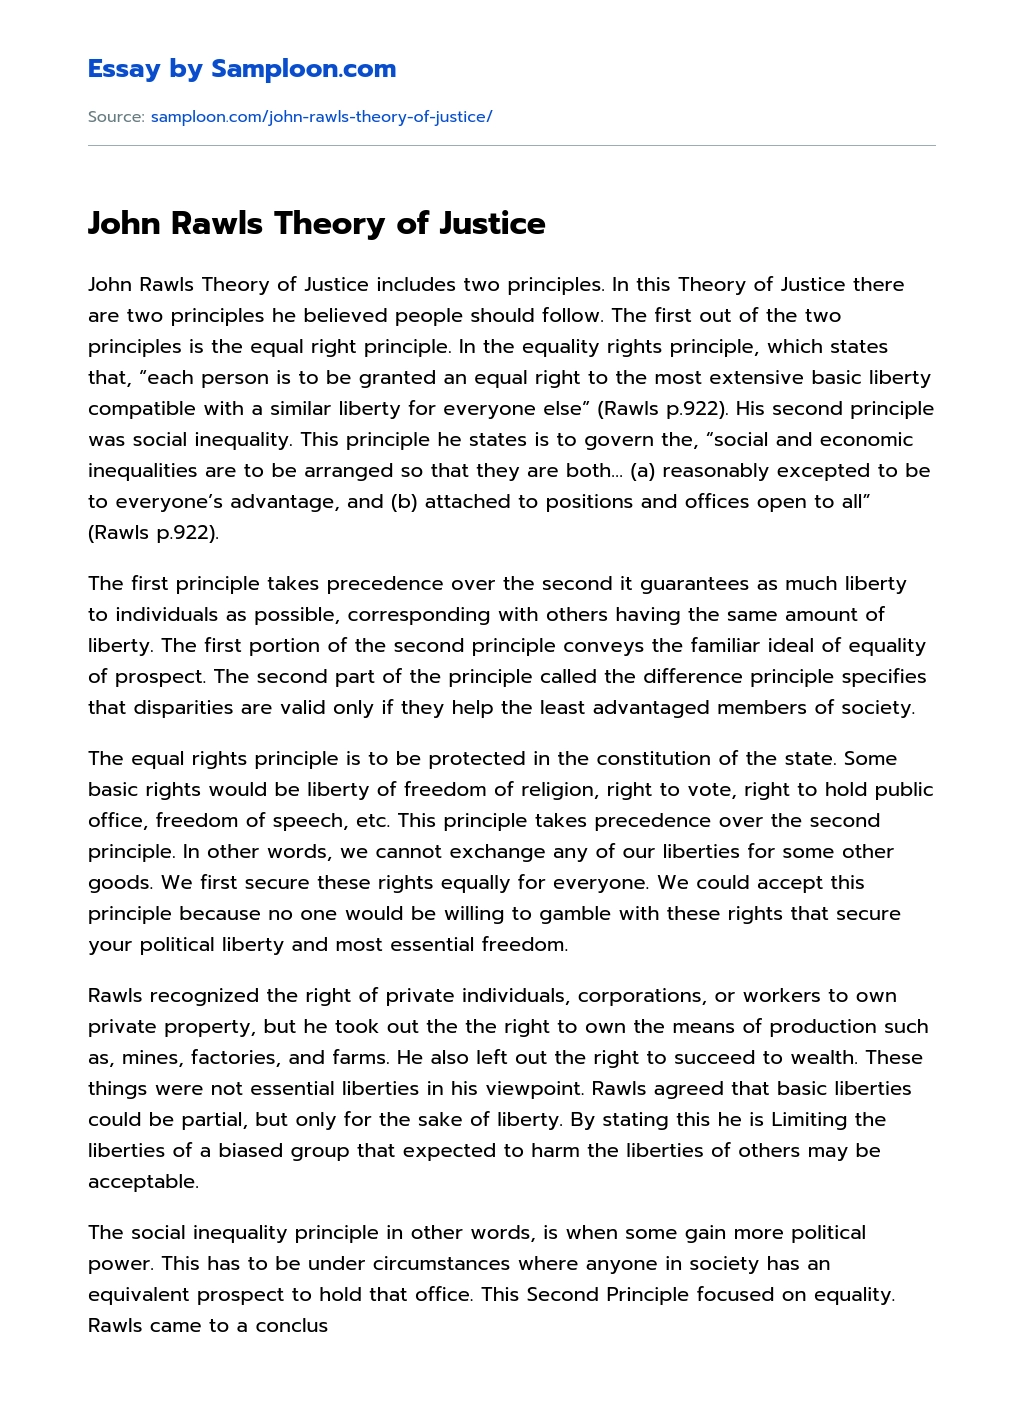 john rawls theory of justice summary